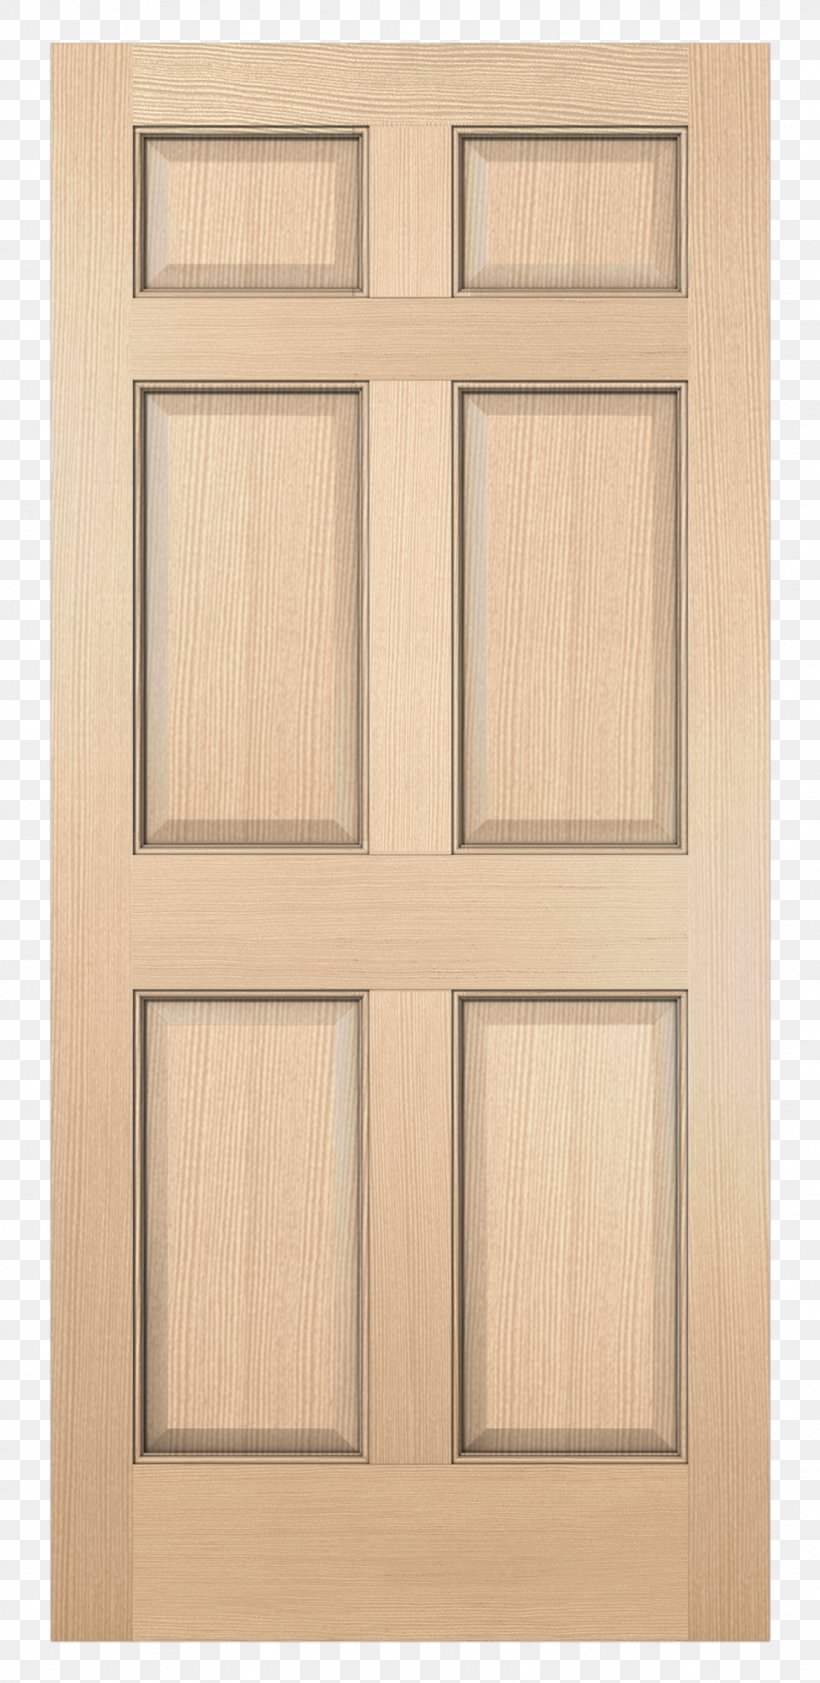 Window Jeld-Wen Door Furniture Wood, PNG, 974x2000px, Window, Barn, Cabinetry, Door, Door Furniture Download Free